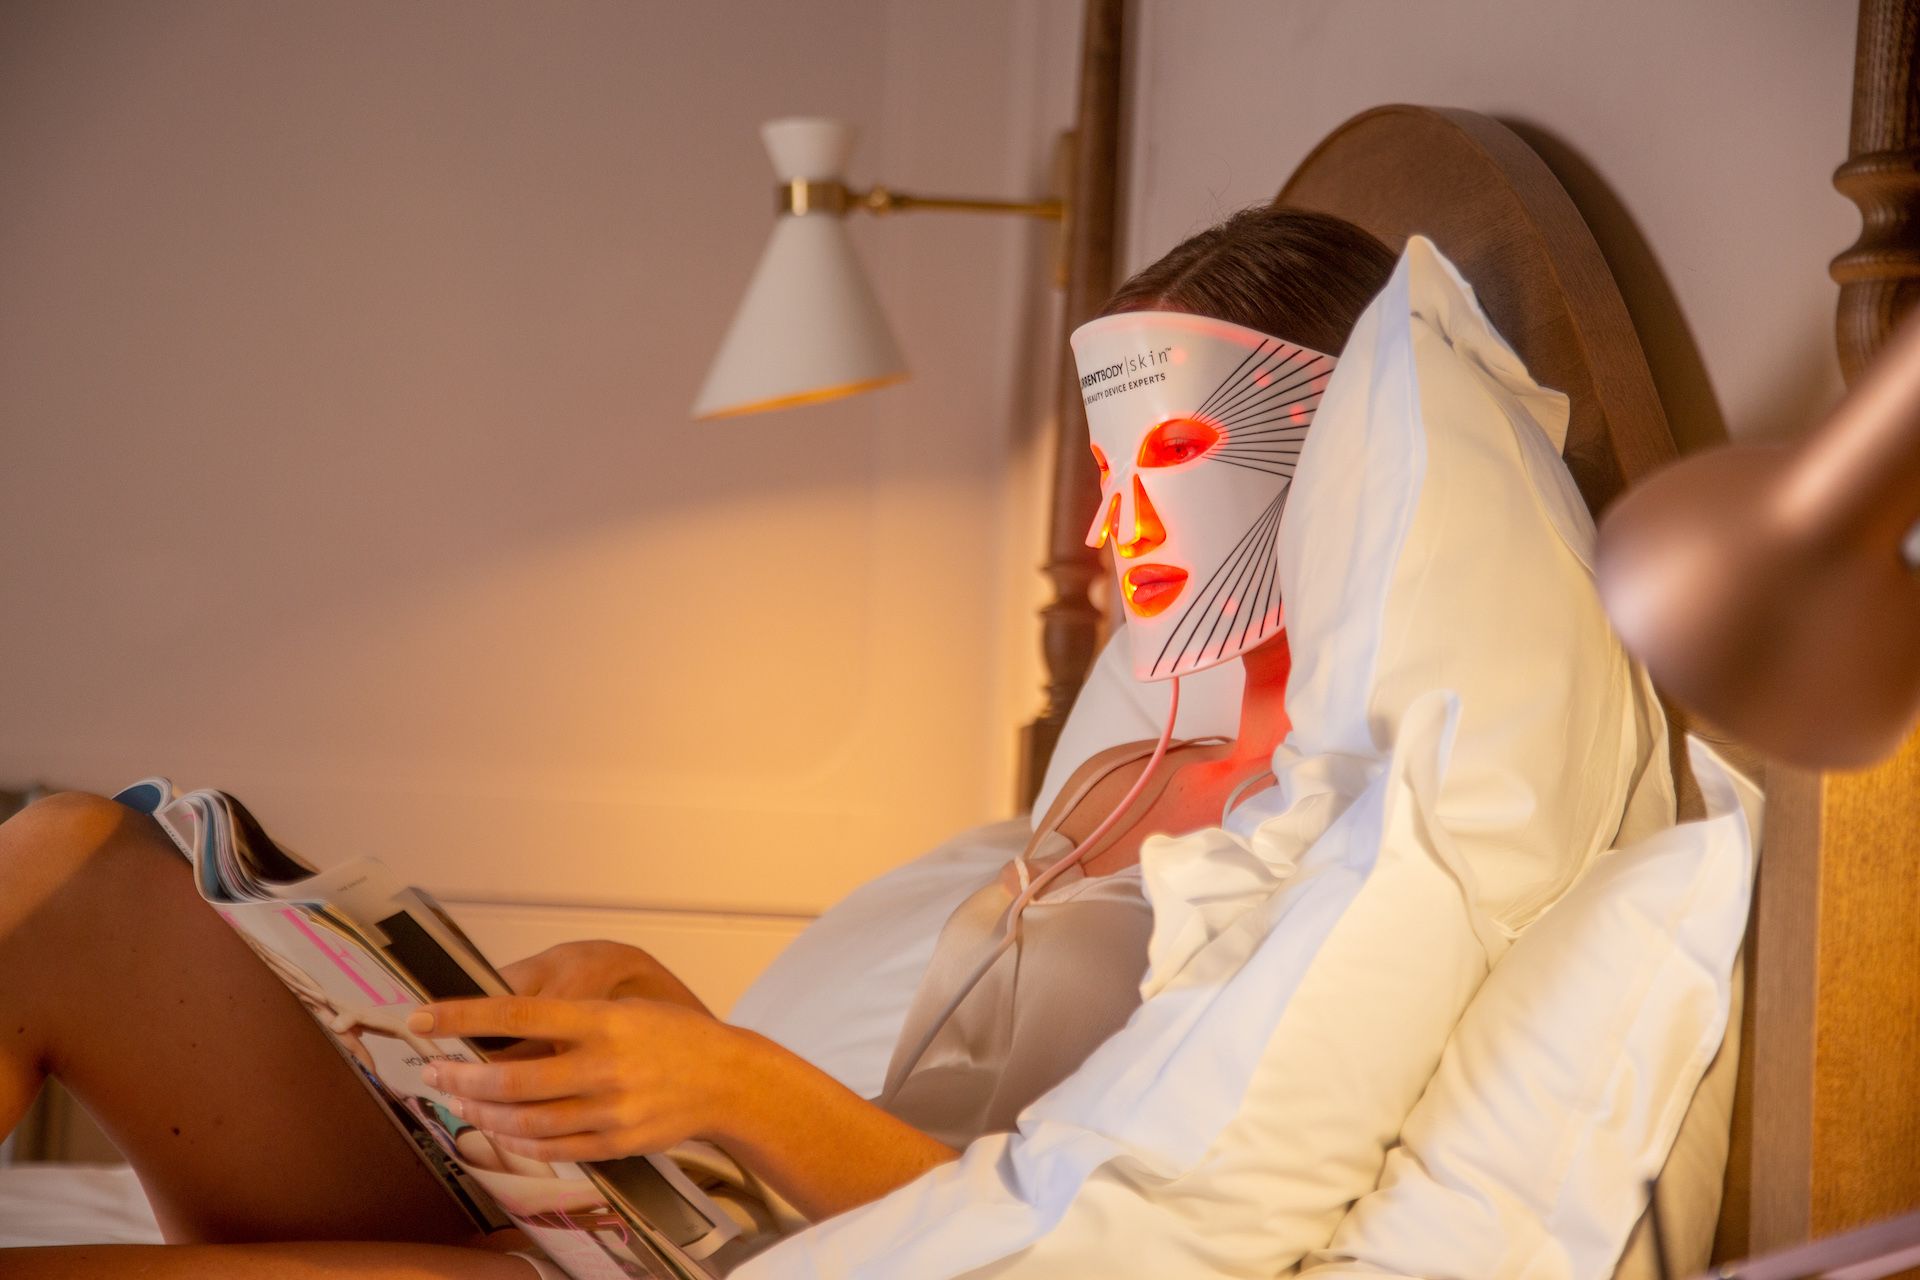 CurrentBody-Skin_LED-Lichttherapie-Maske-Gesicht_moods-cultureandcream-blogpost